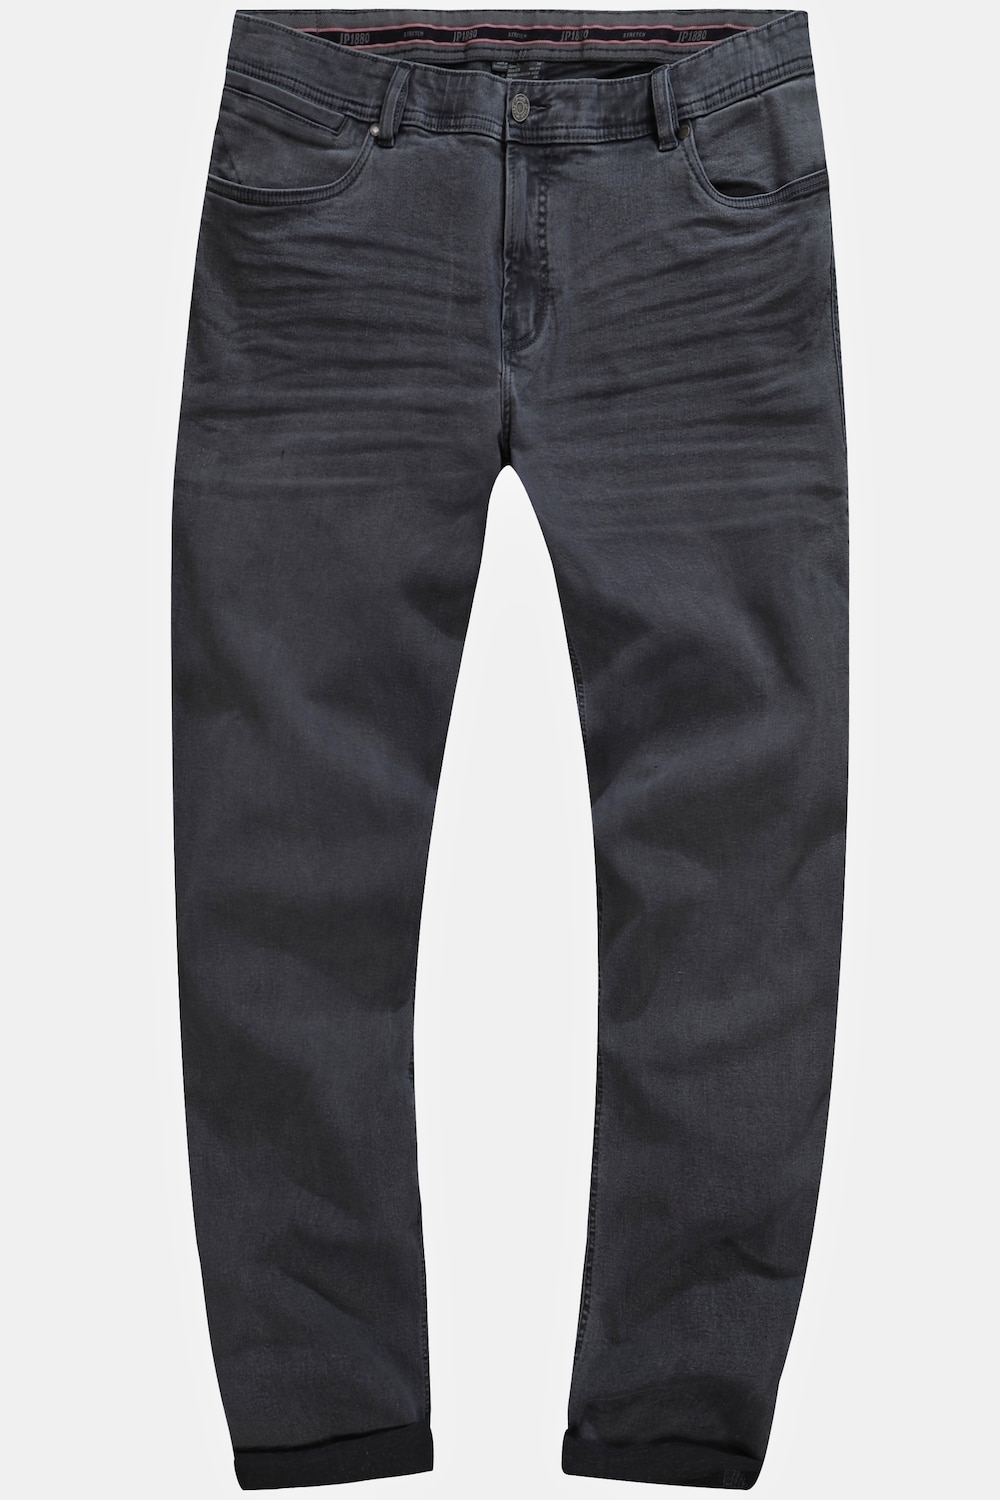 Grote Maten Jeans, Heren, grijs, Maat: 56, Katoen, JP1880